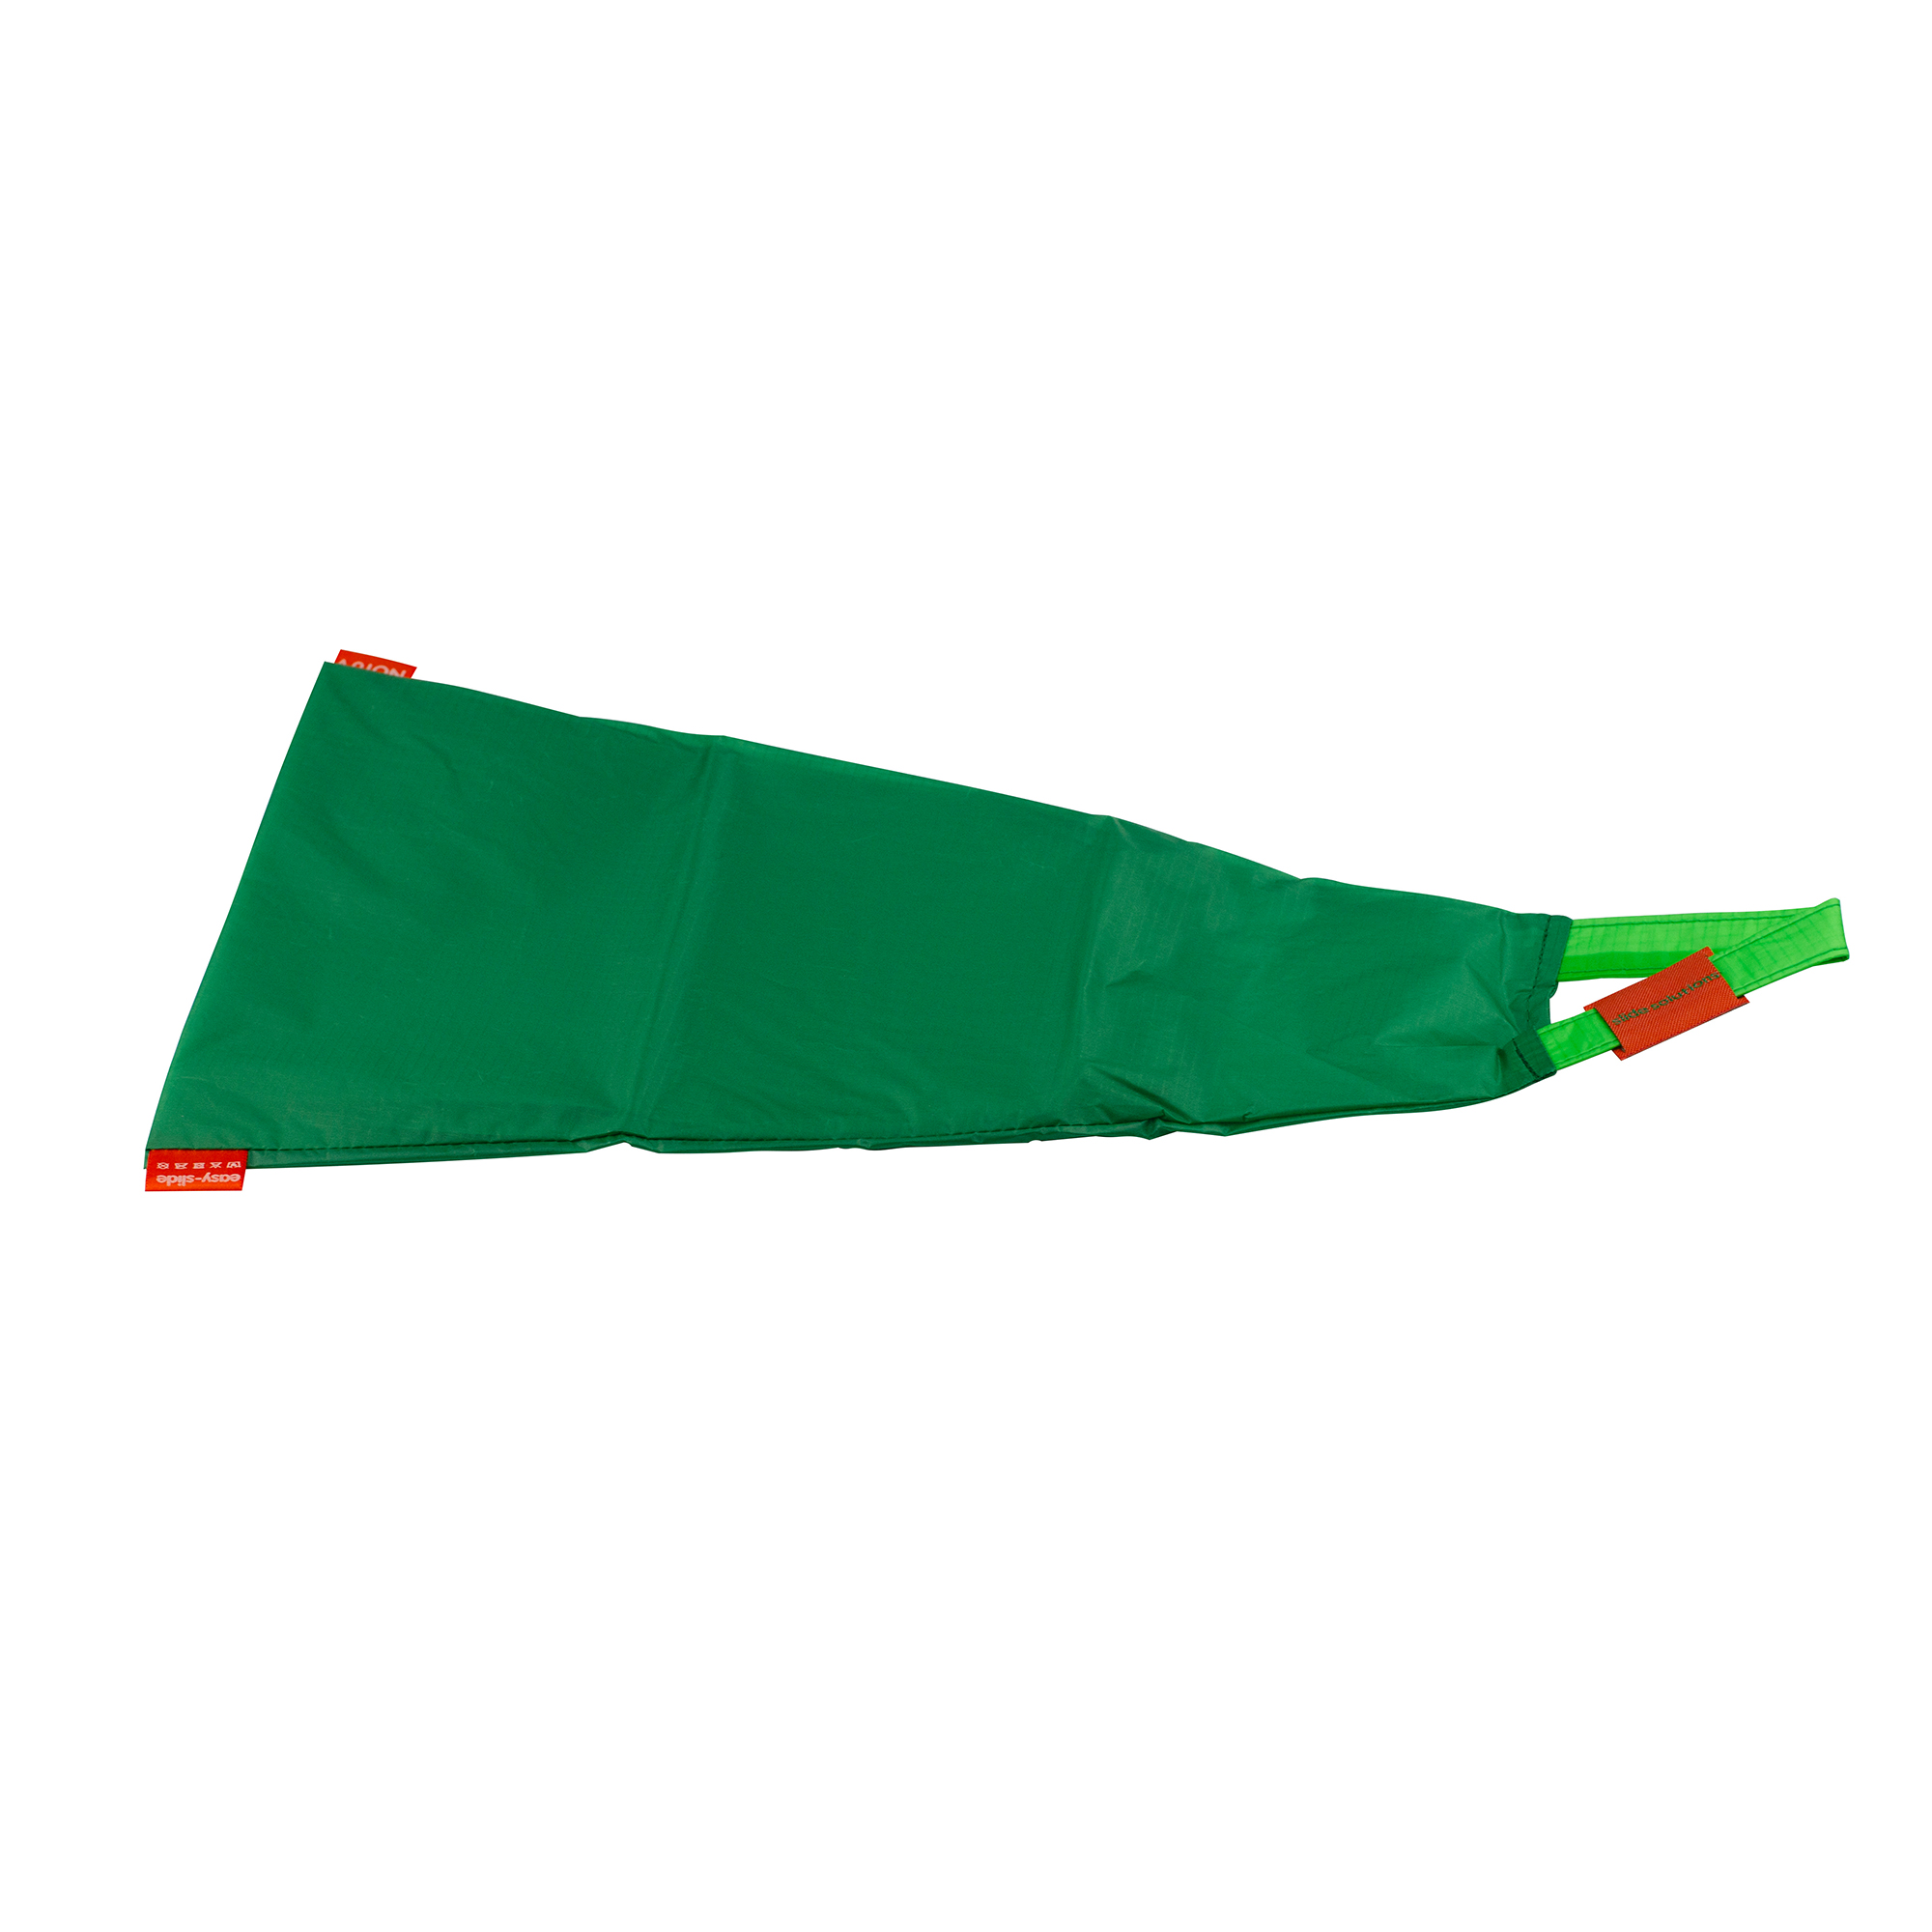 Sundo Arion Easy-Slide Anziehhilfe, grün, XL ab Gr. 42